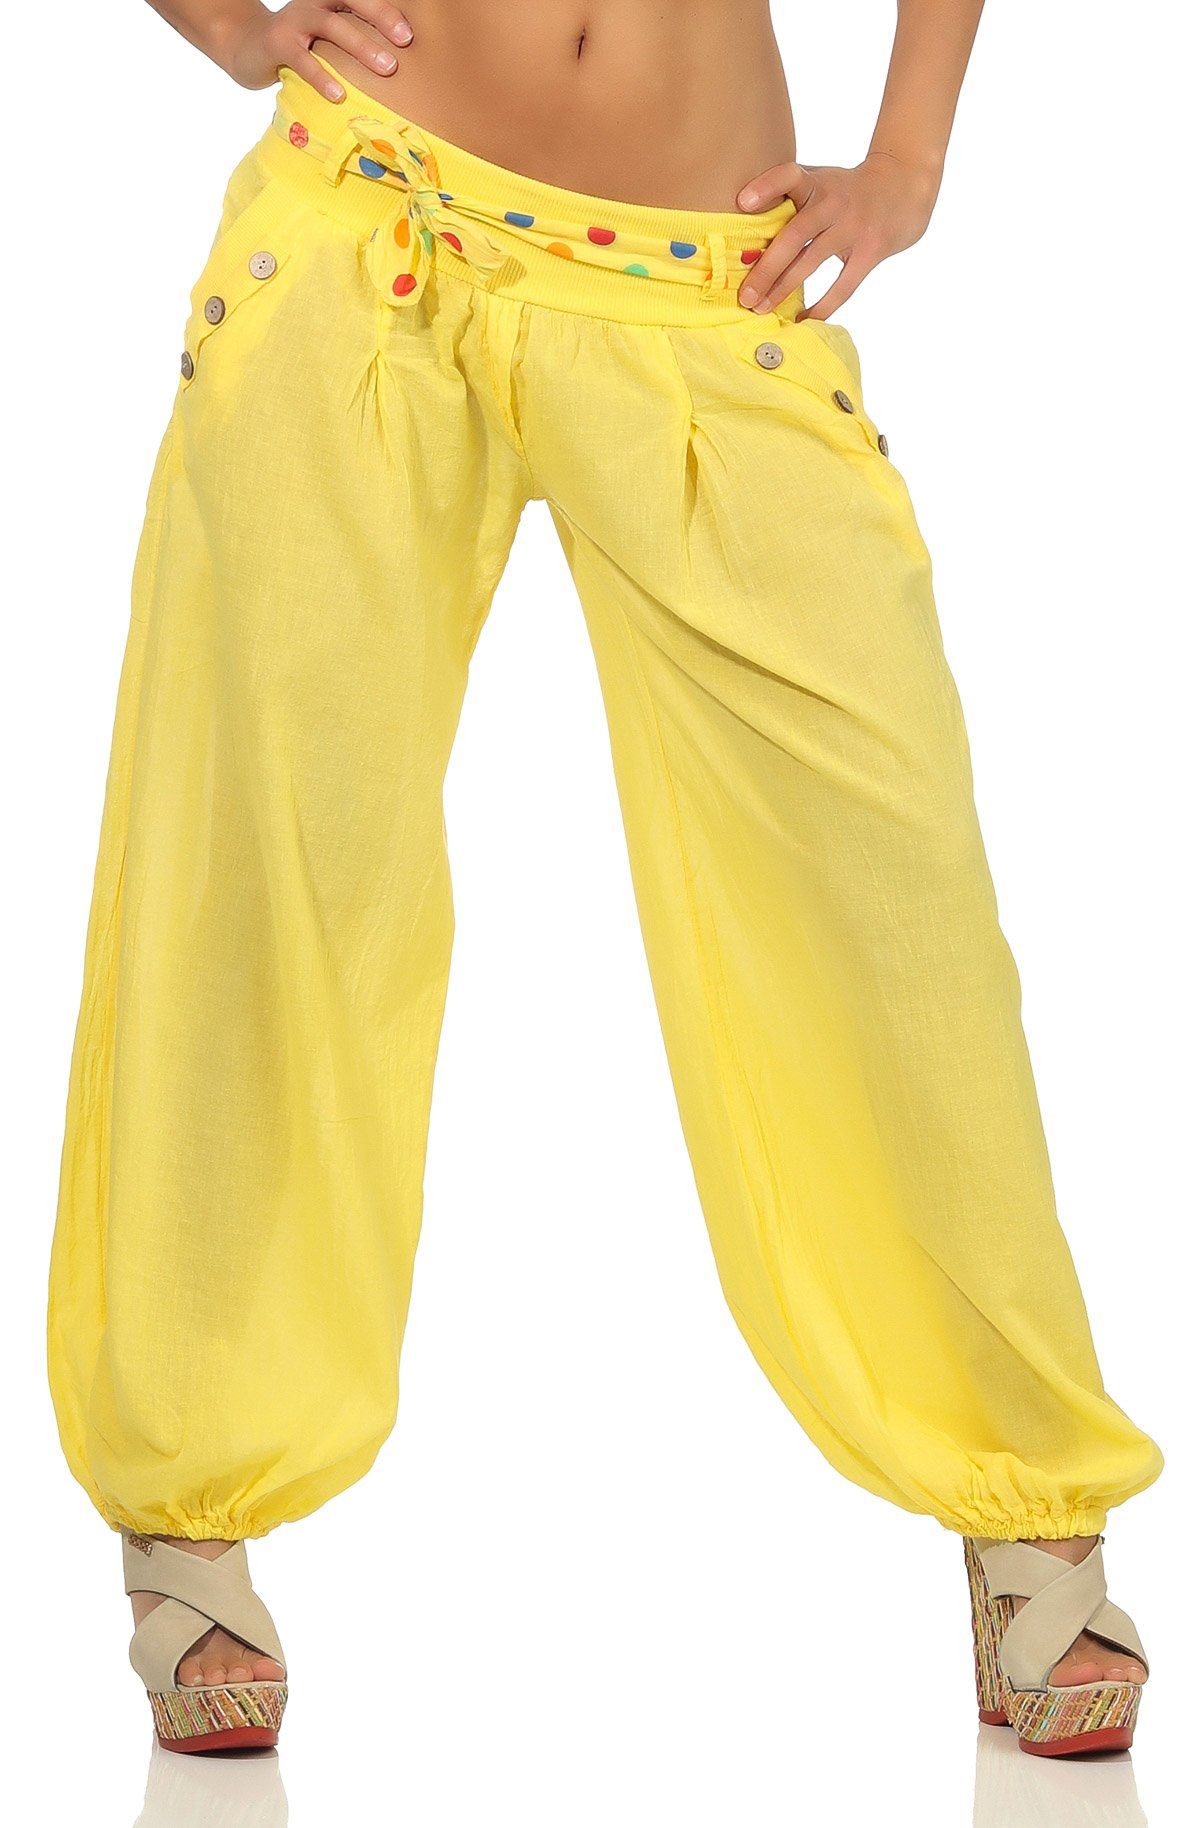 gelb fashion more farblich than 3417 Haremshose mit malito Einheitsgröße Stoffgürtel passendem